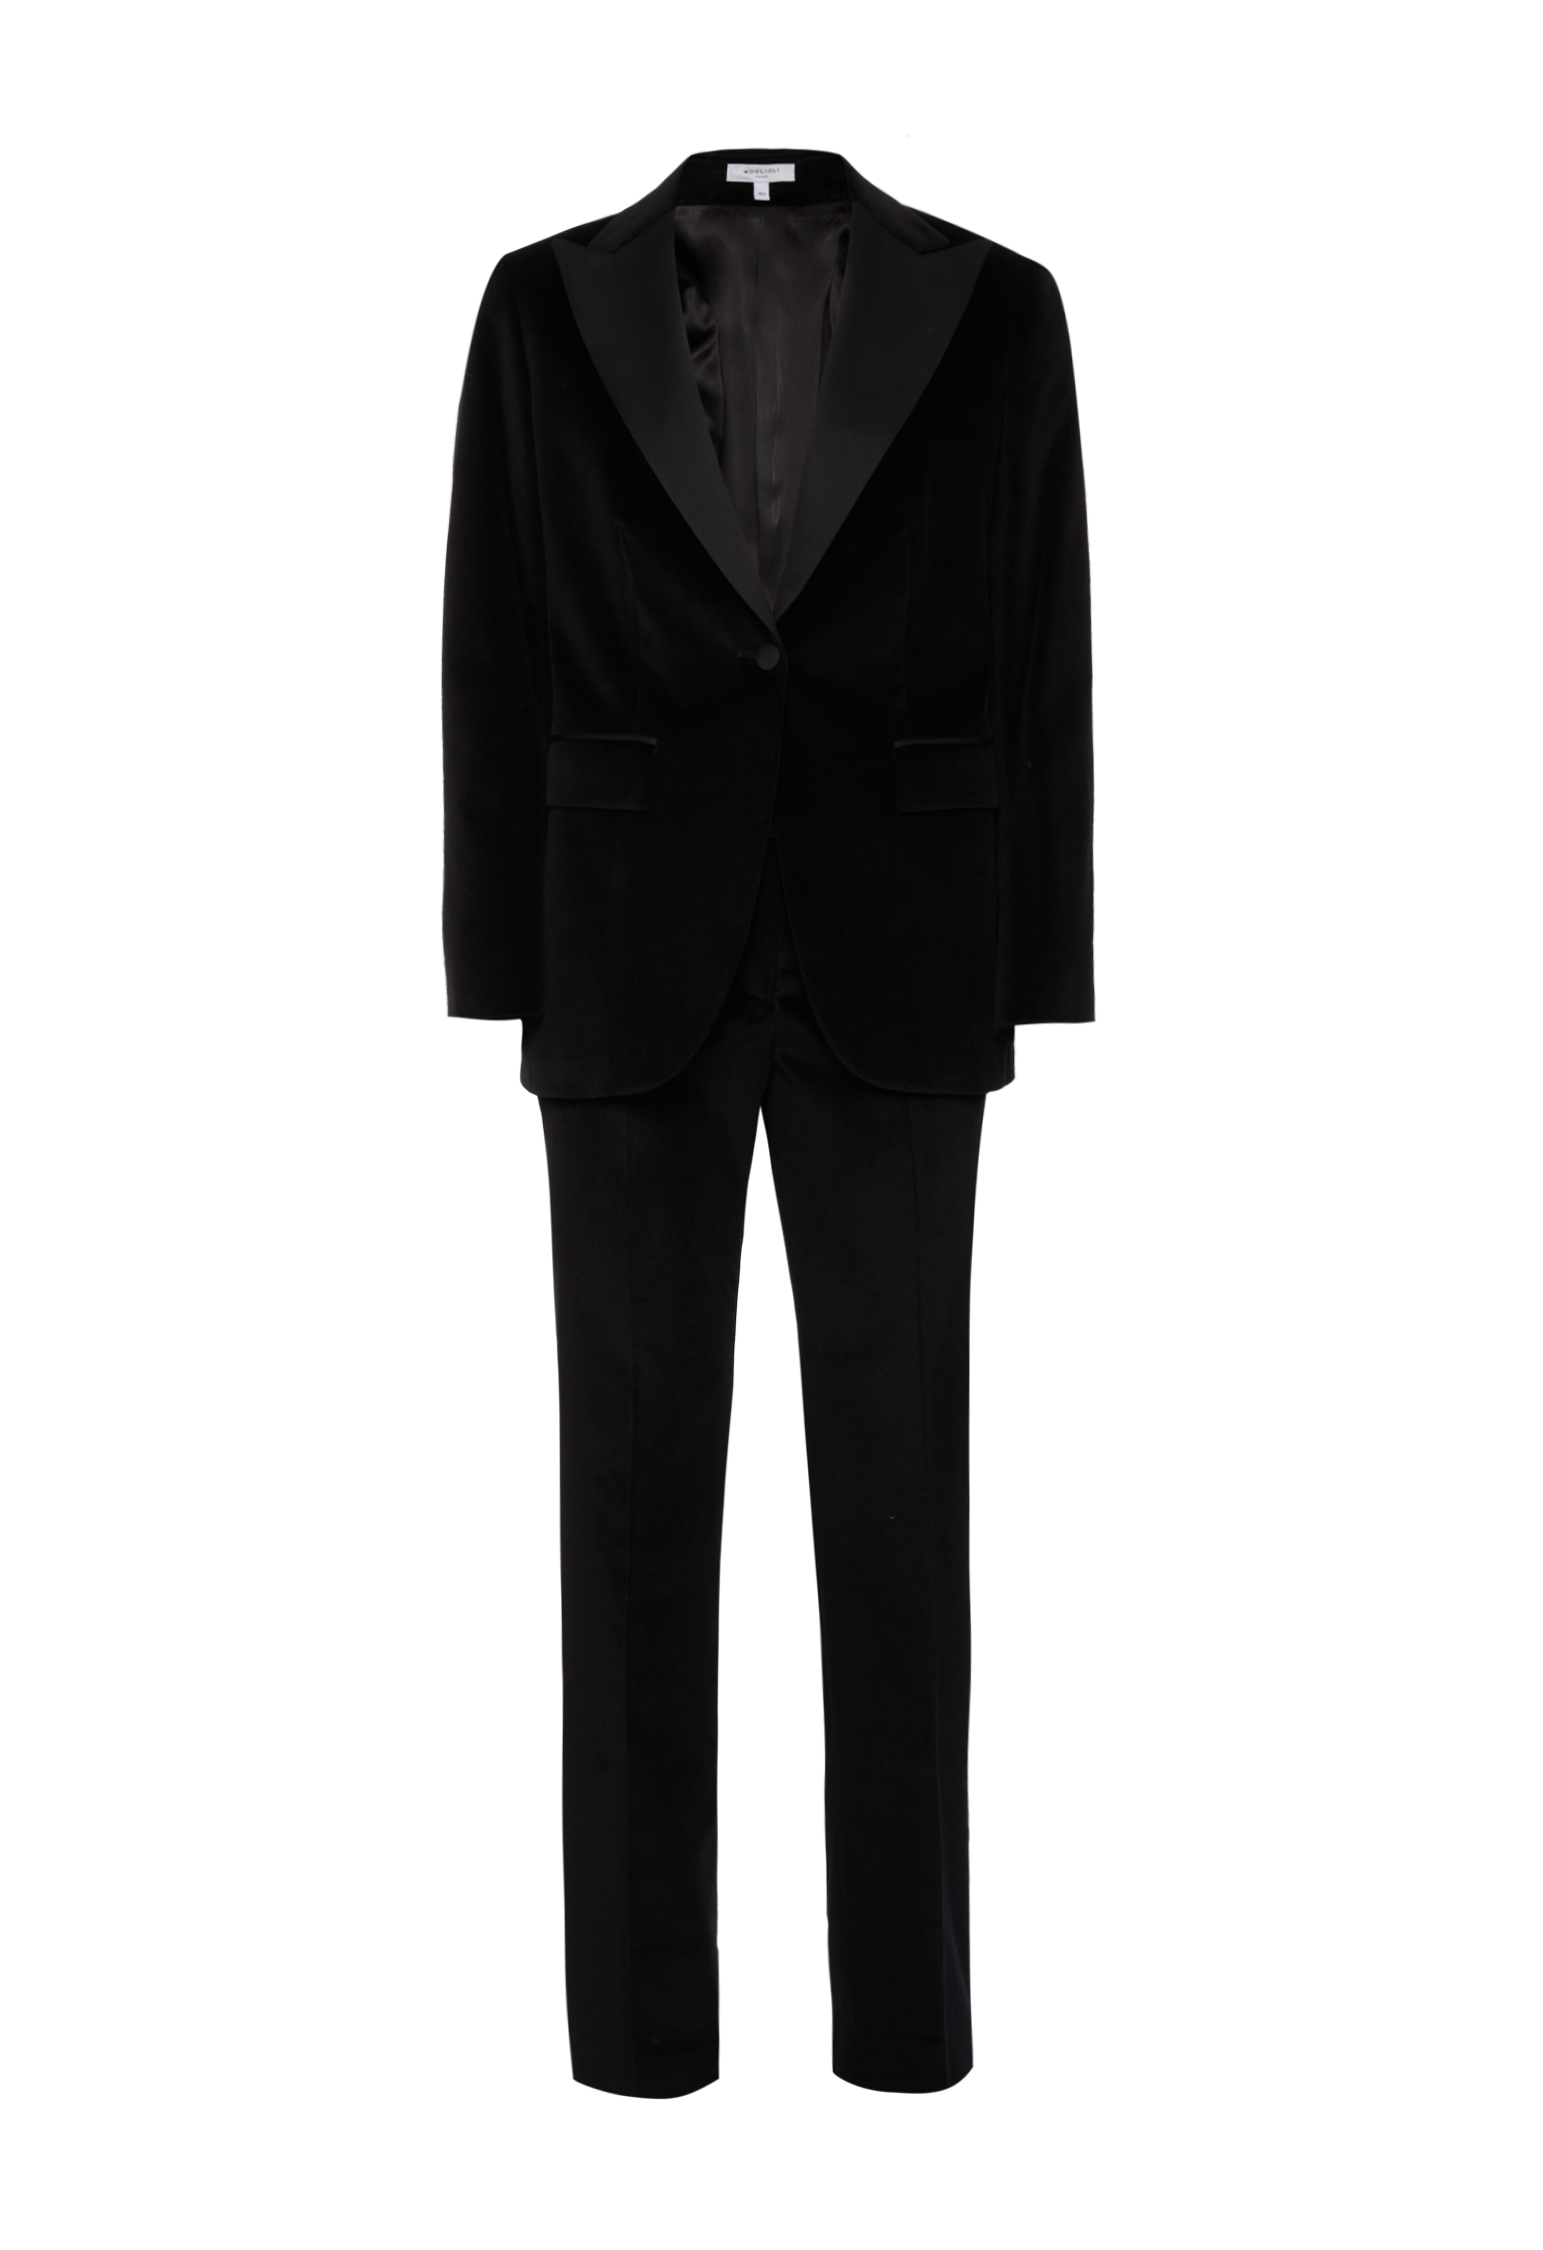 Boglioli Woman's Black Velvet-effect Cotton Trouser Suit